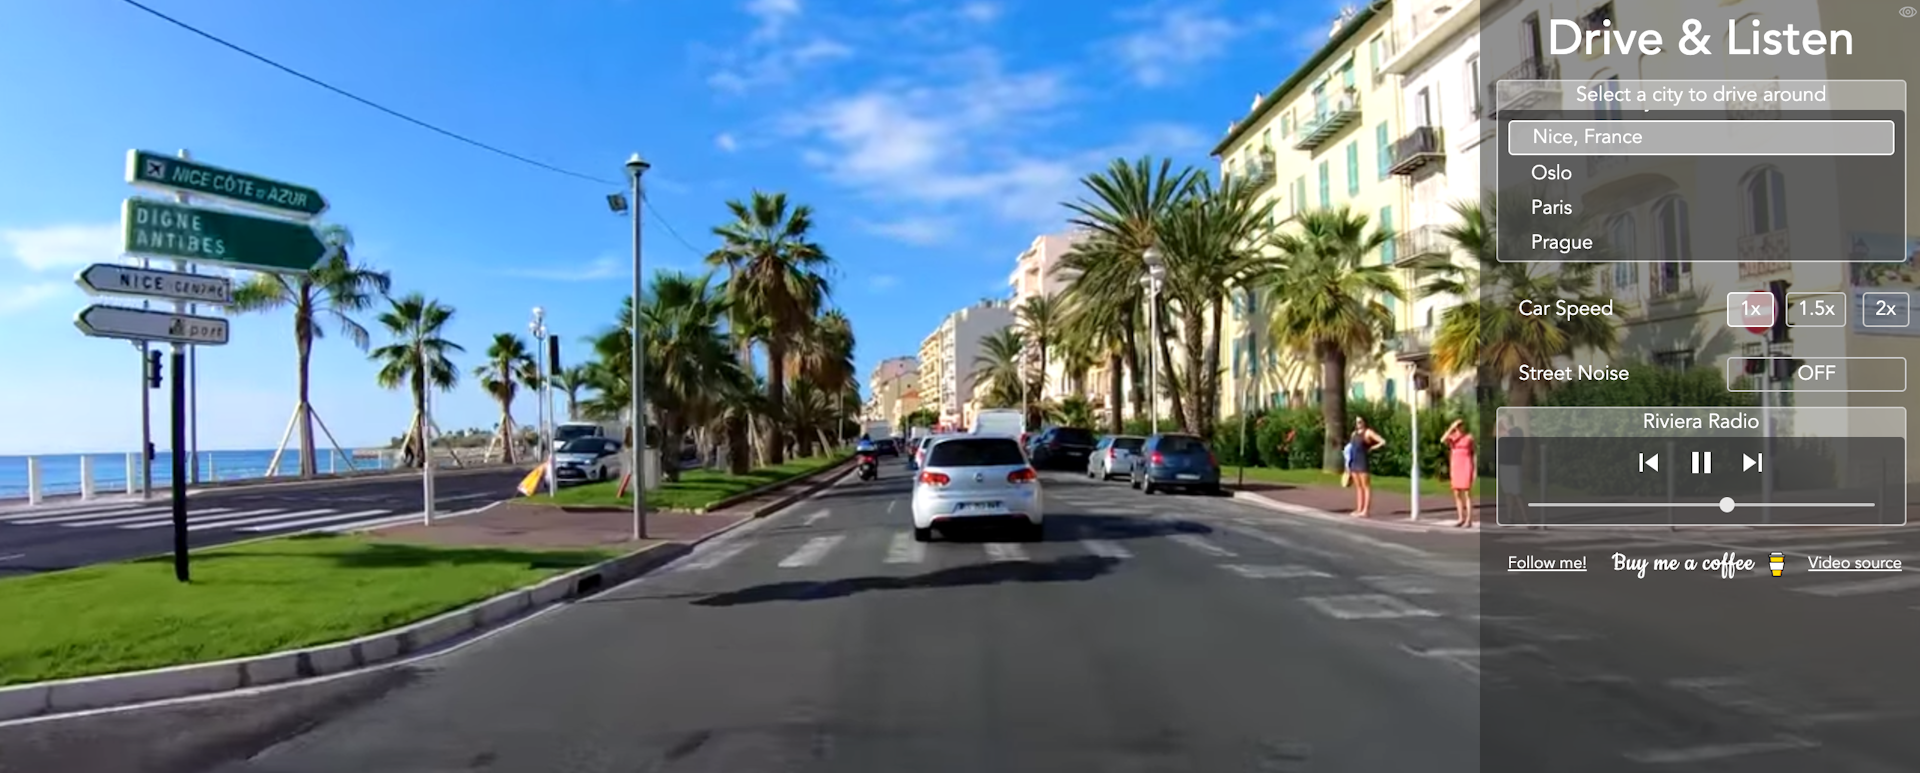 Dashcam footage of Nice promenade